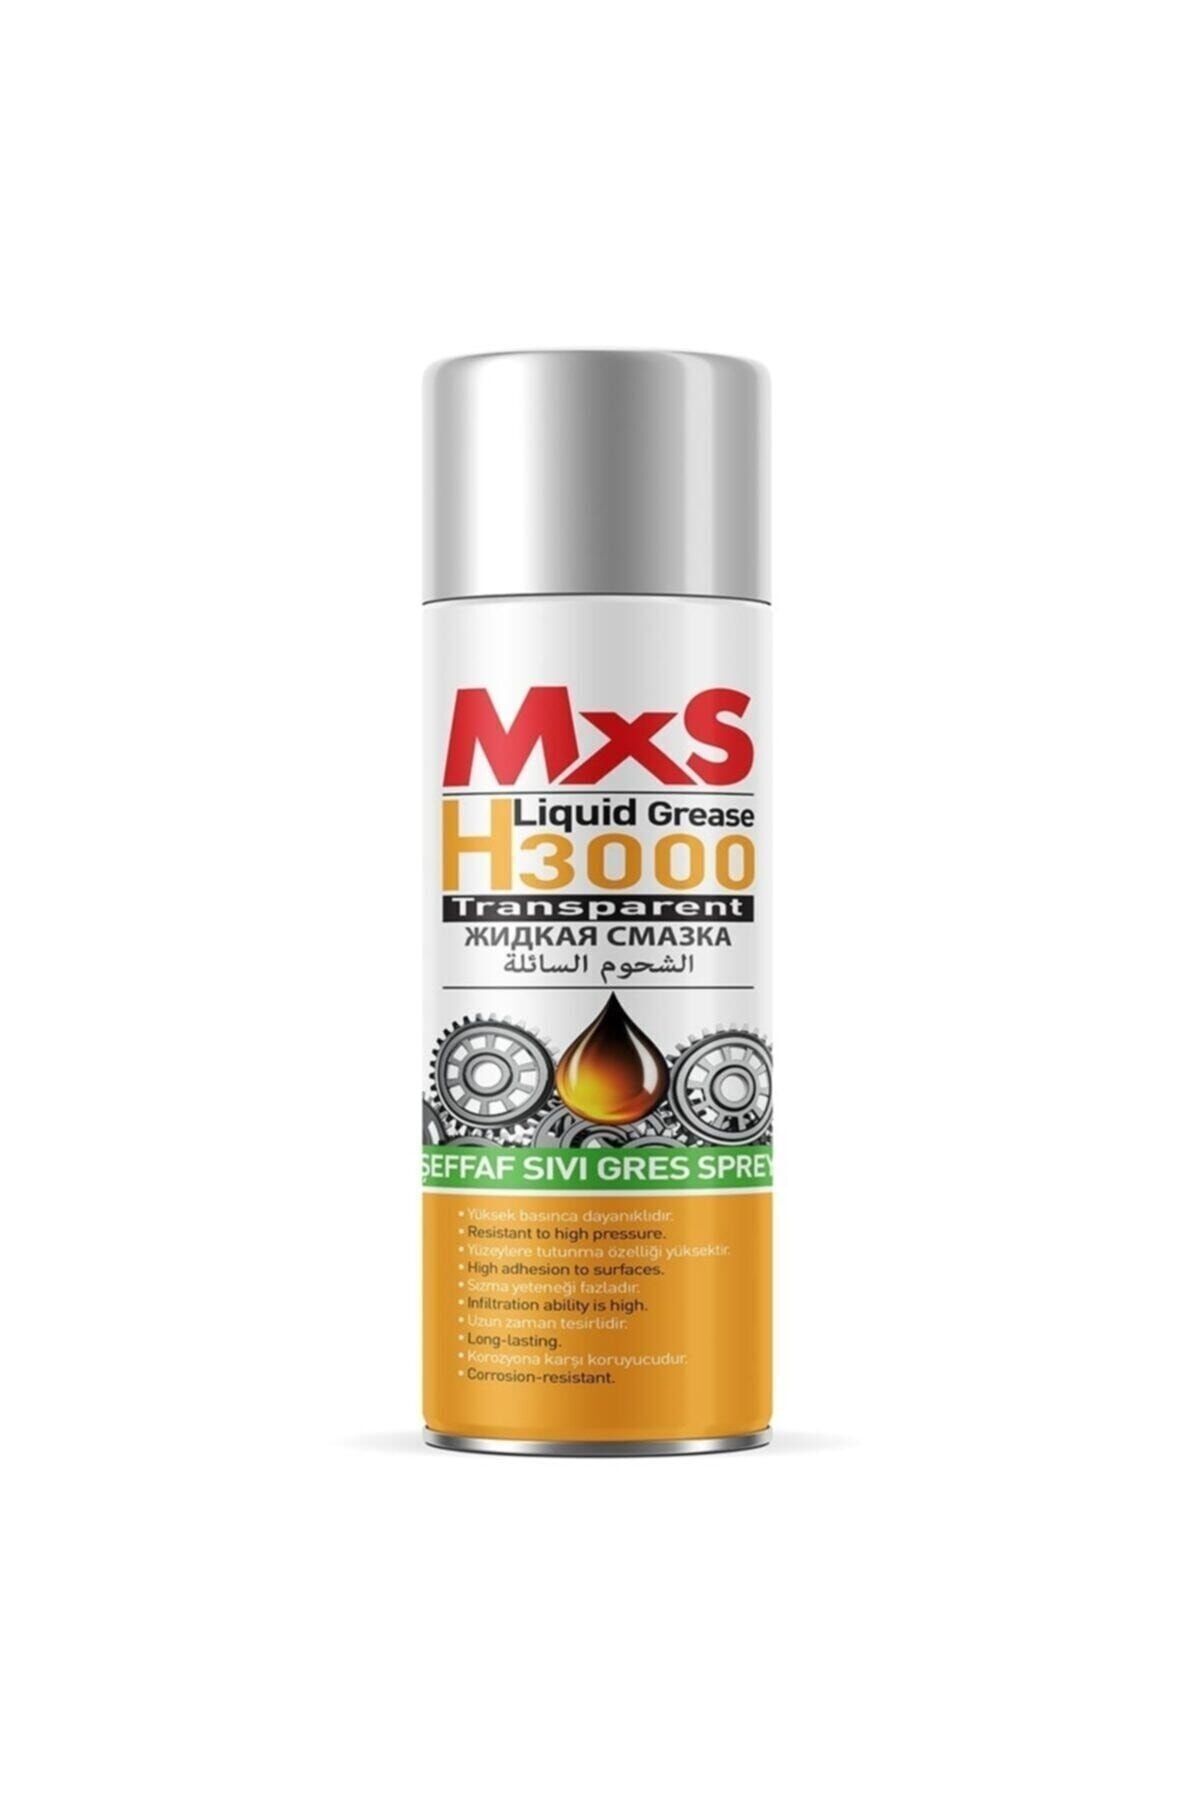 MxS H 3000 Yağlayıcı Sıvı Gres Sprey-400ml